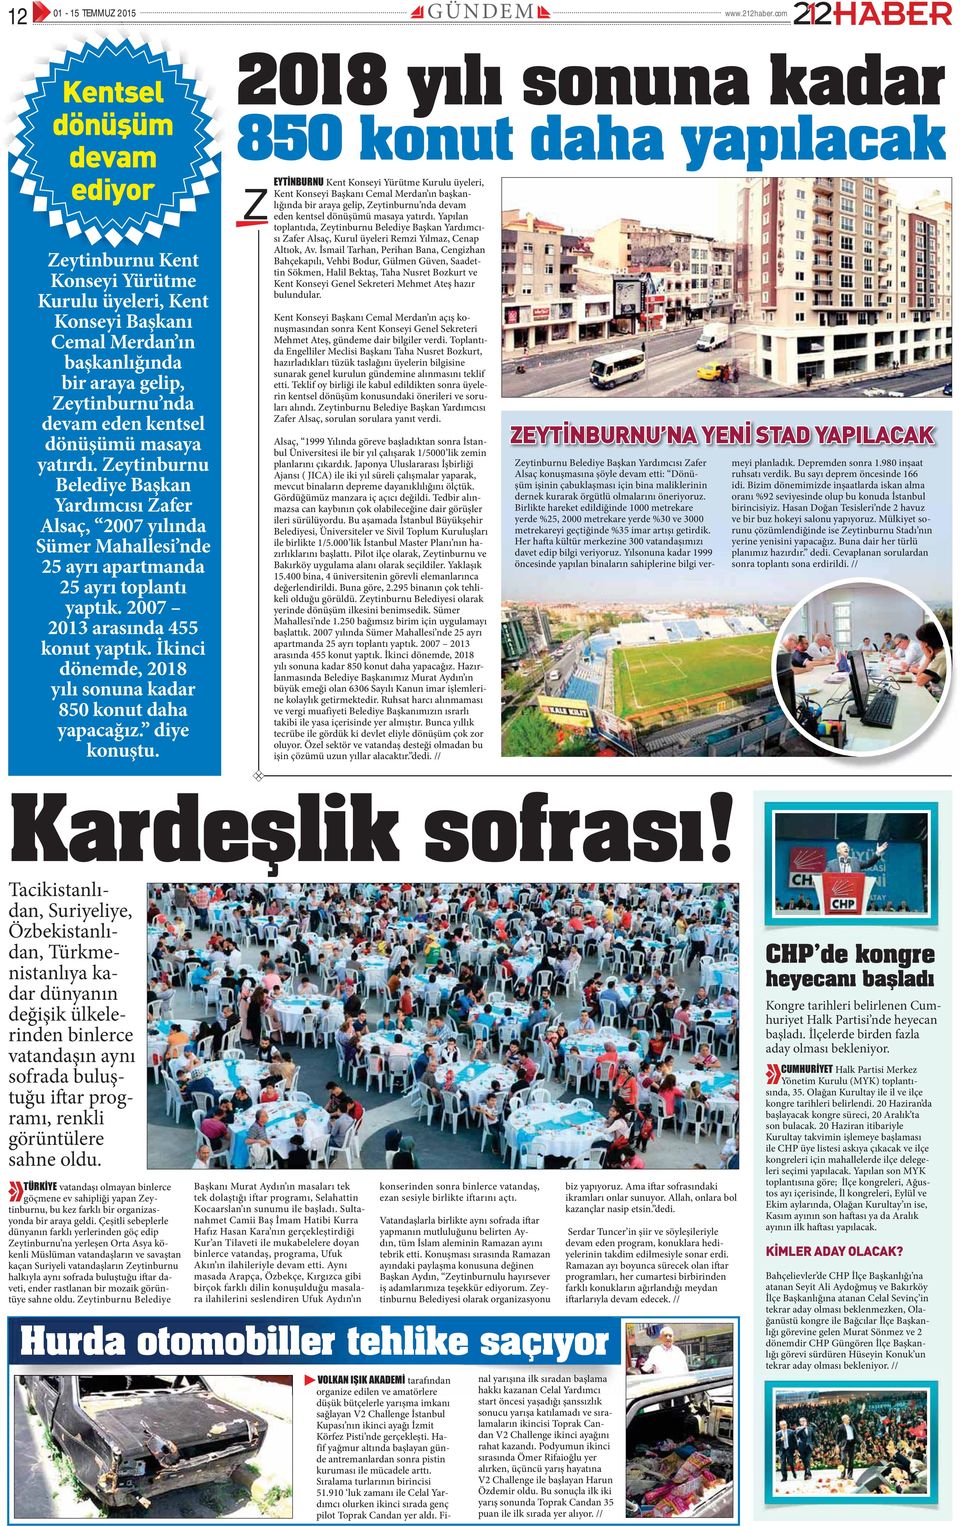 masaya yatırdı. Zeytinburnu Belediye Başkan Yardımcısı Zafer Alsaç, 2007 yılında Sümer Mahallesi nde 25 ayrı apartmanda 25 ayrı toplantı yaptık. 2007 2013 arasında 455 konut yaptık.